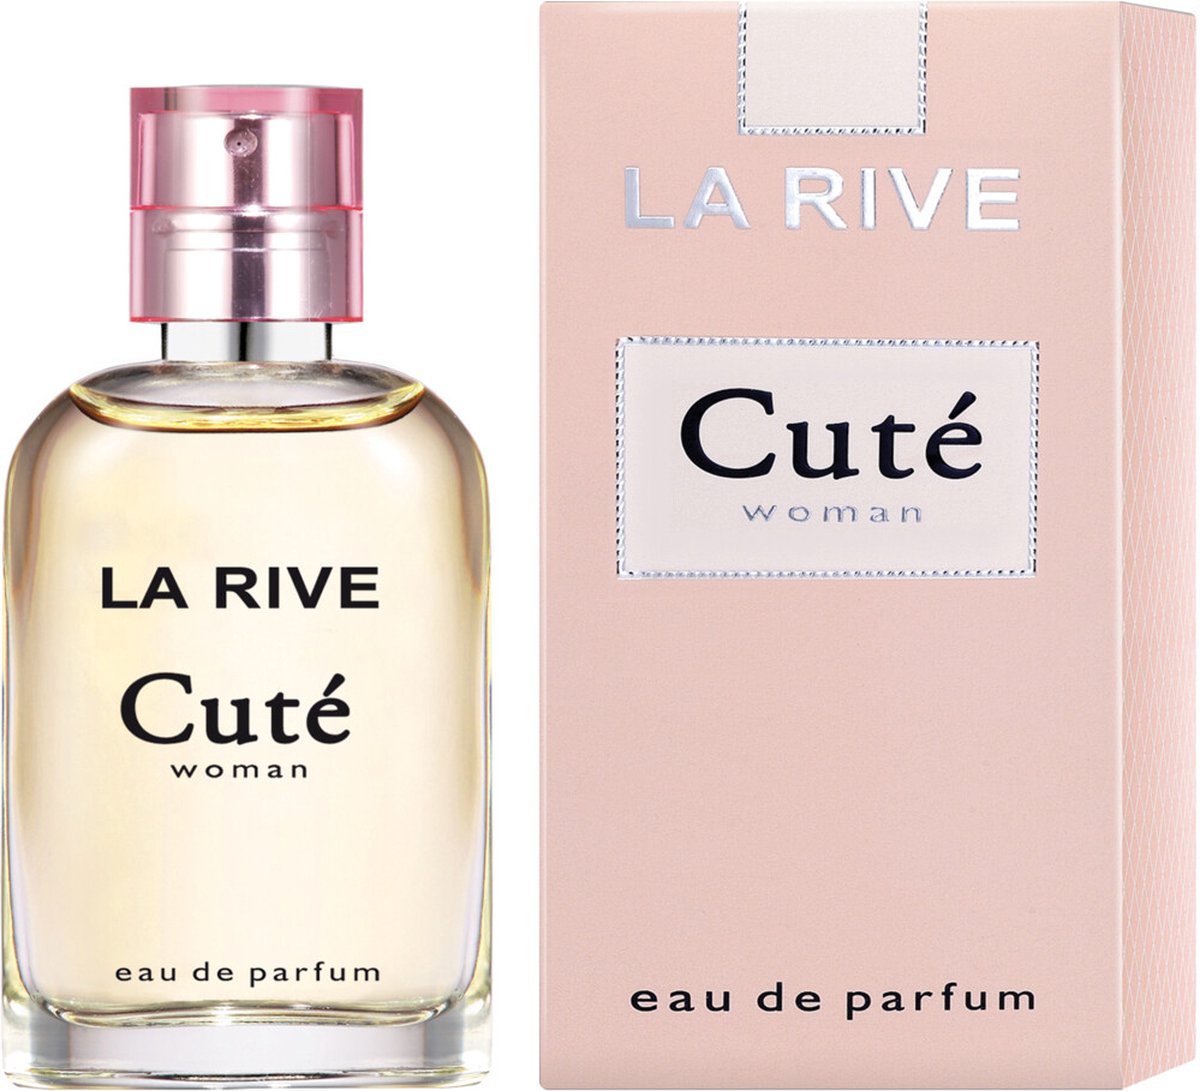 La Rive Cuté Eau de Parfum 30 ml